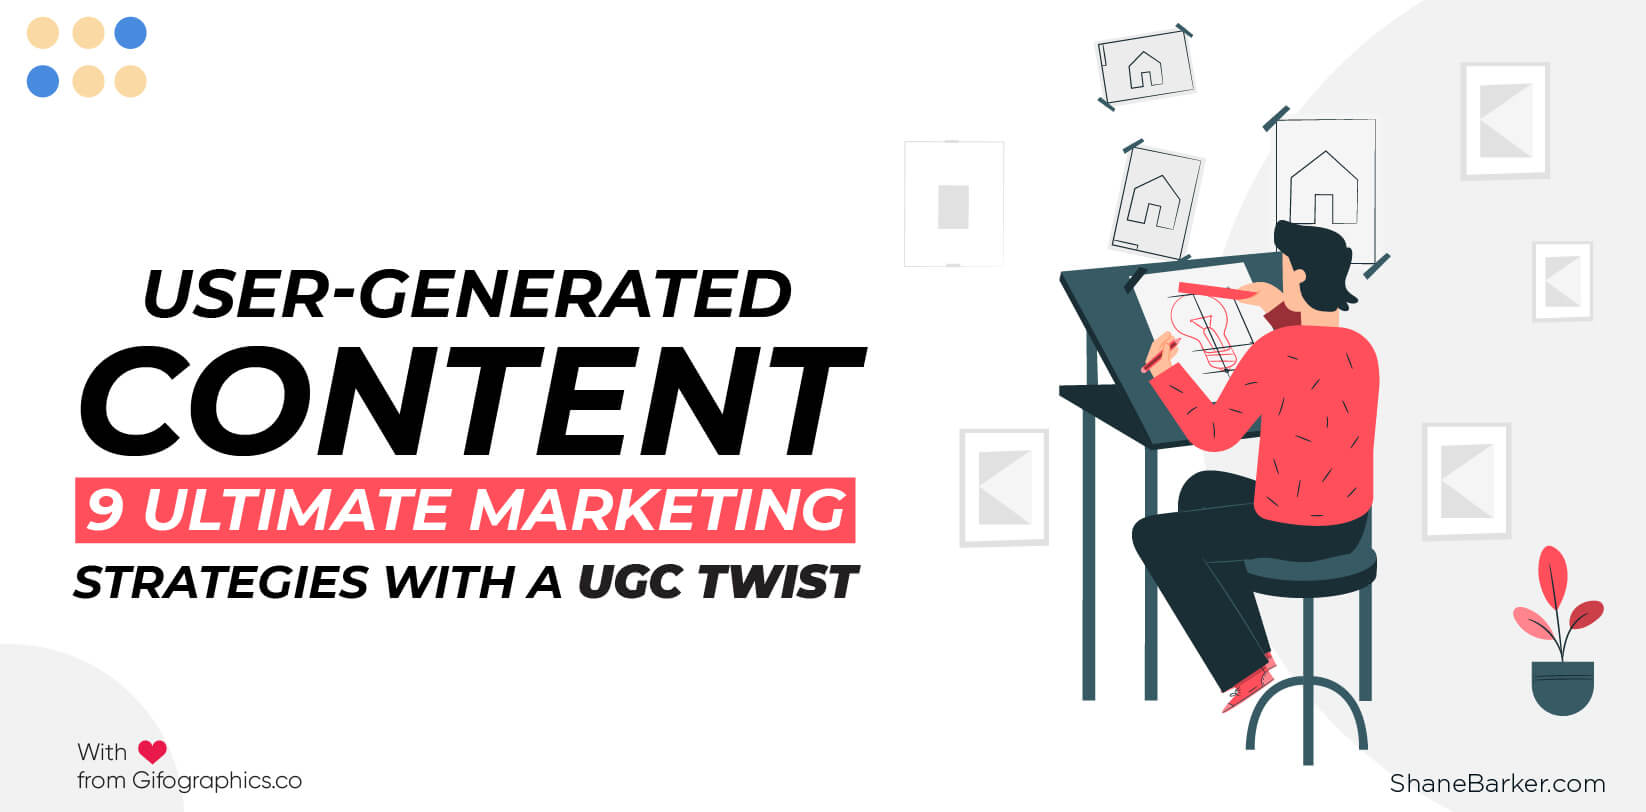 사용자 제작 콘텐츠 : UGC 트위스트를 통한 9 가지 궁극적 인 마케팅 전략